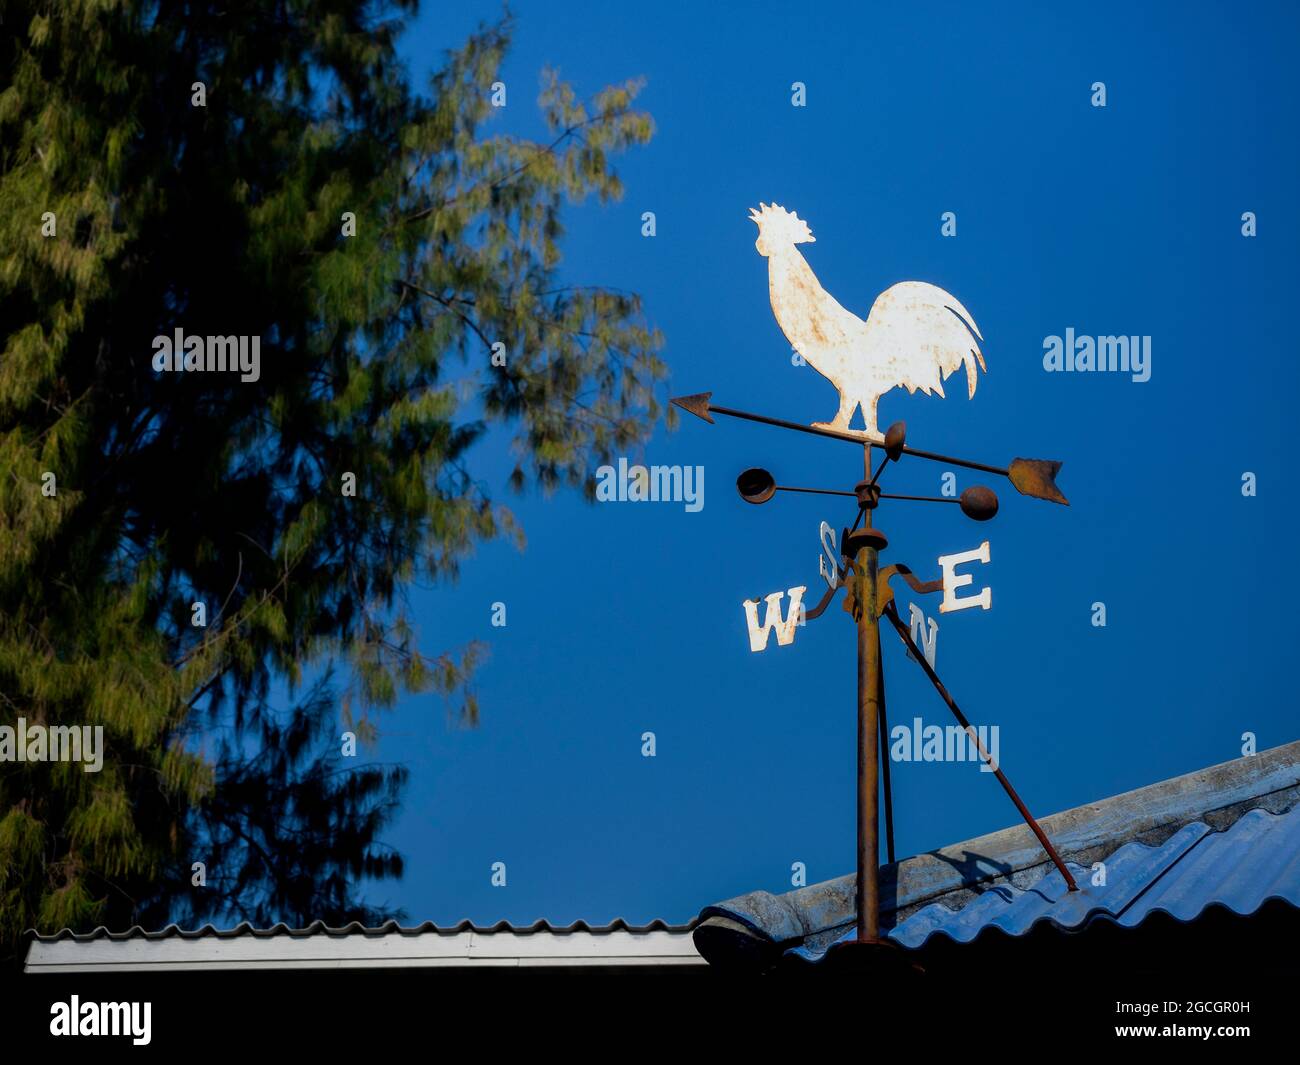 Veleta meteorológica Rooster para indicar la dirección del viento. El viejo  weathercock de la vendimia con letras para los puntos de la brújula en el  tejado cerca del árbol contra el cielo